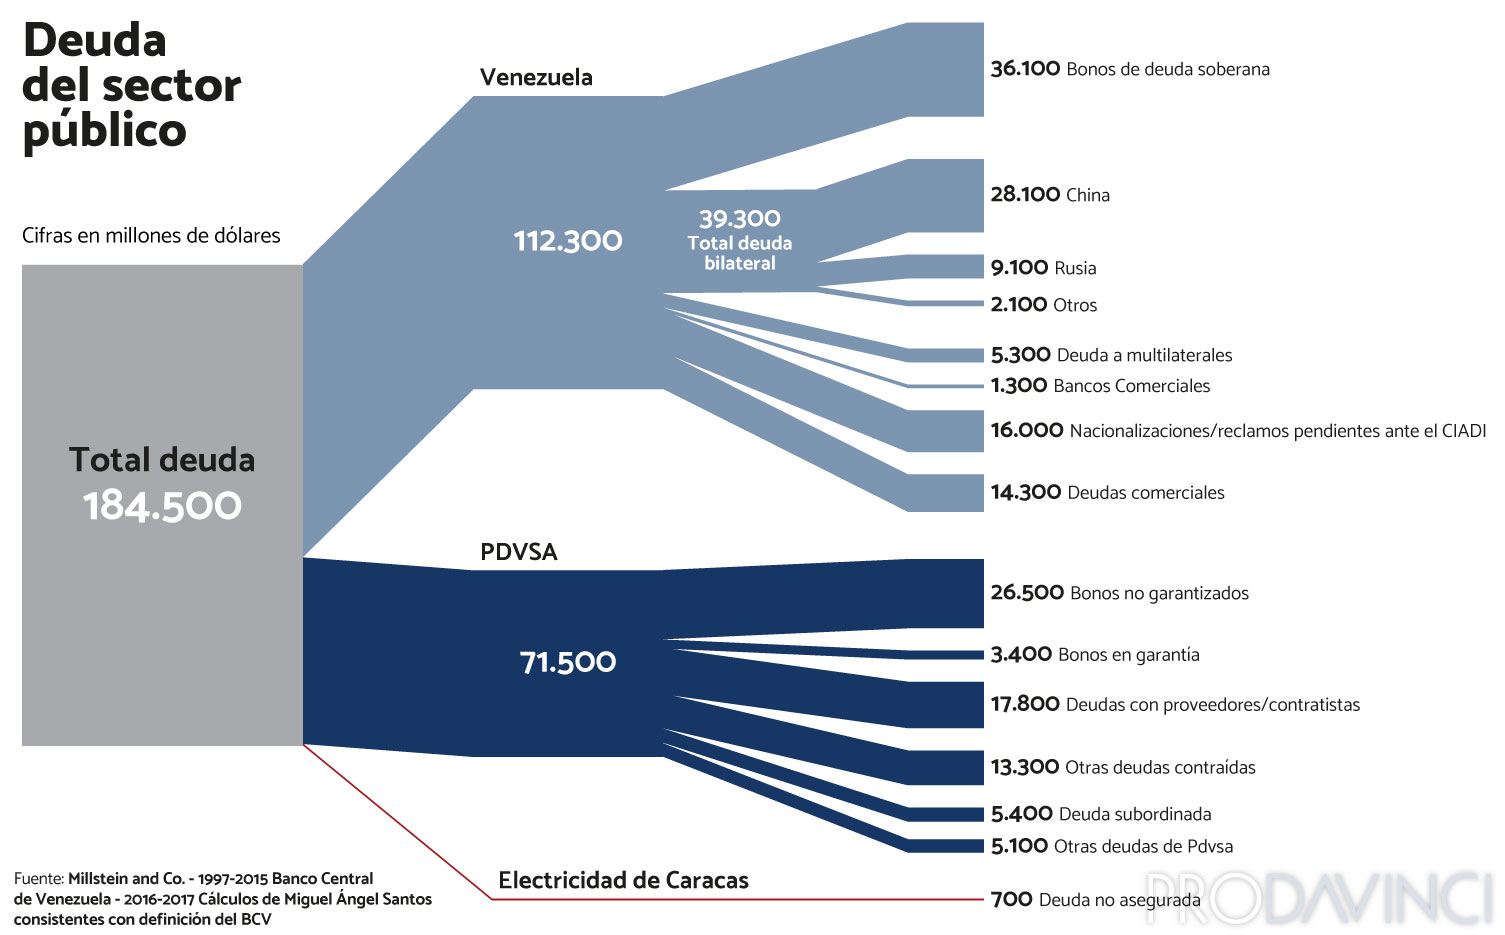 Florida - Venezuela crisis economica - Página 21 Deuda-sector-publico-5